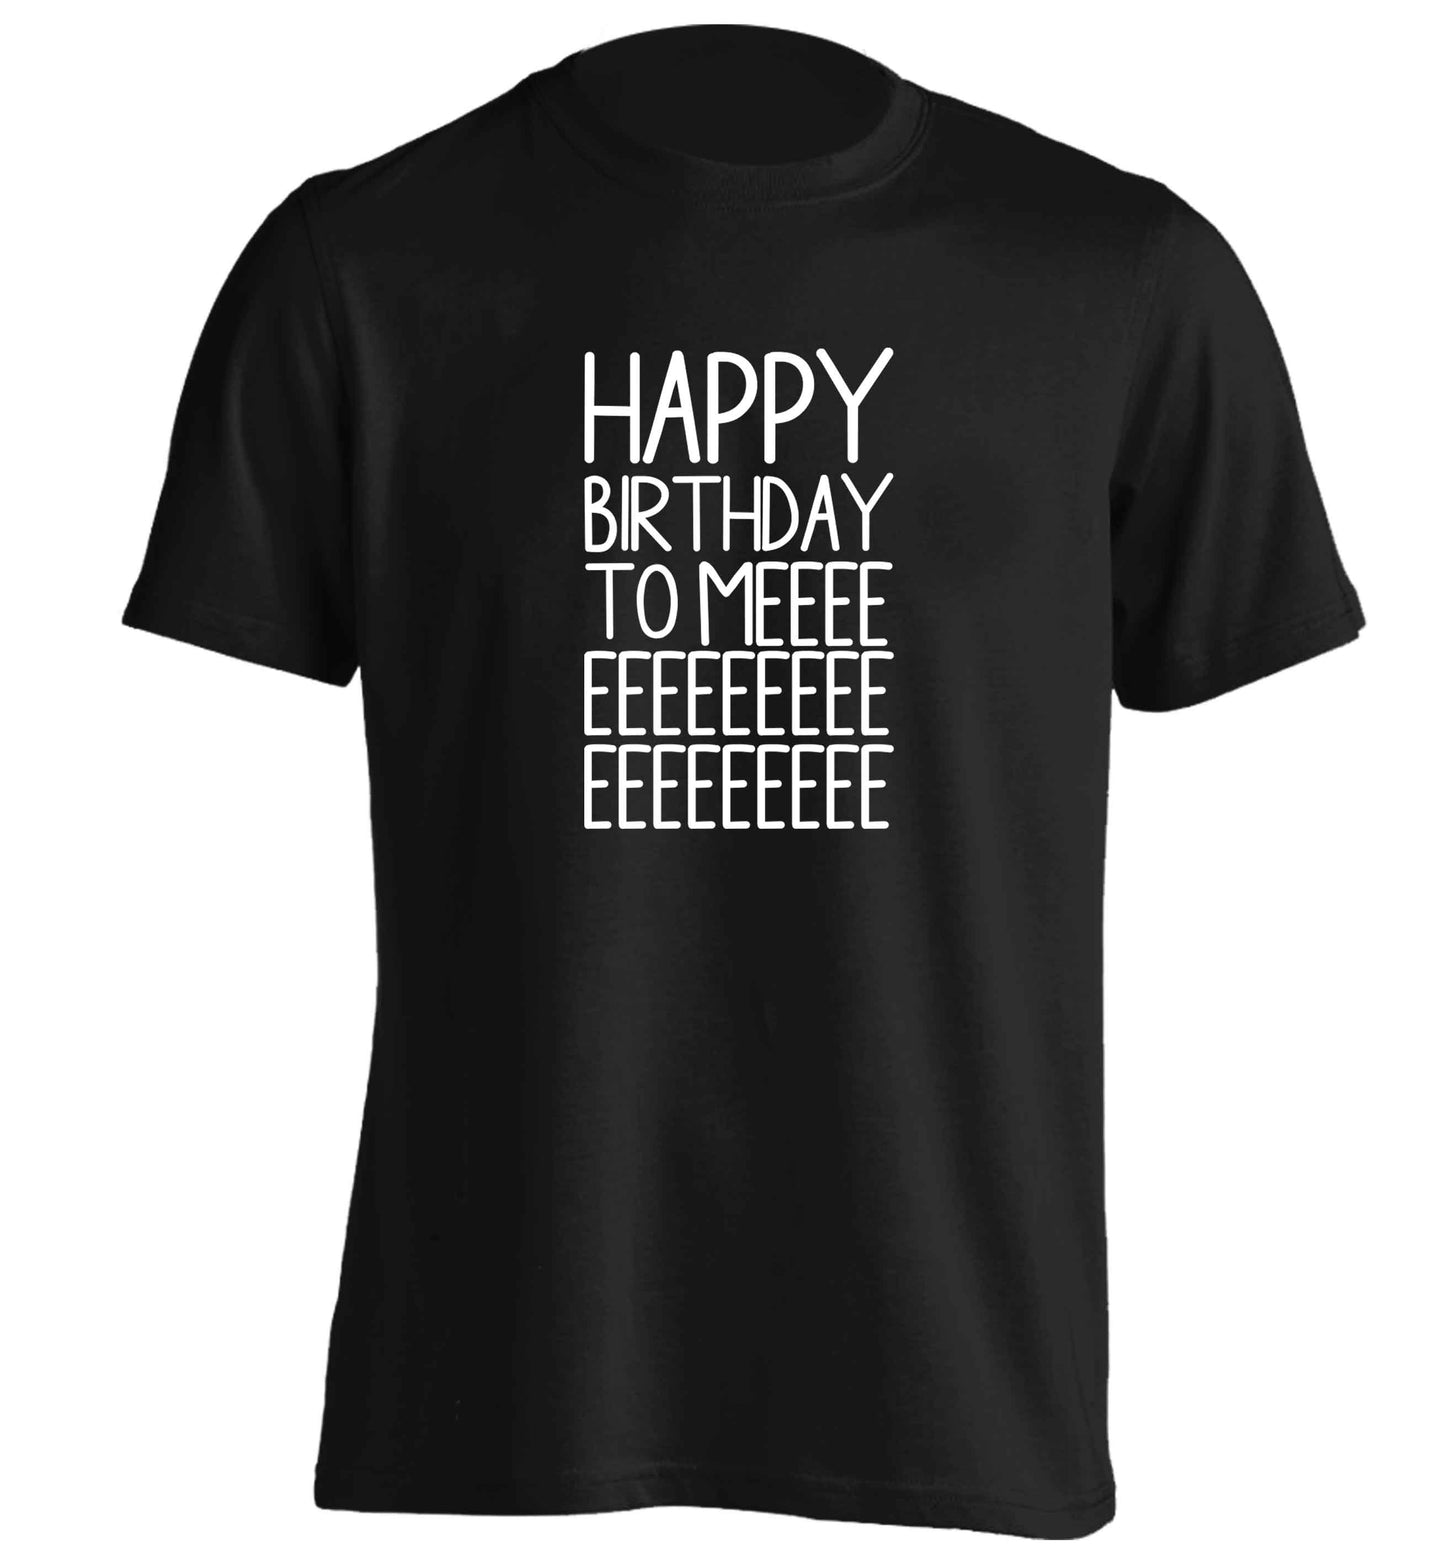 Happy birthday to me adults unisex black Tshirt 2XL